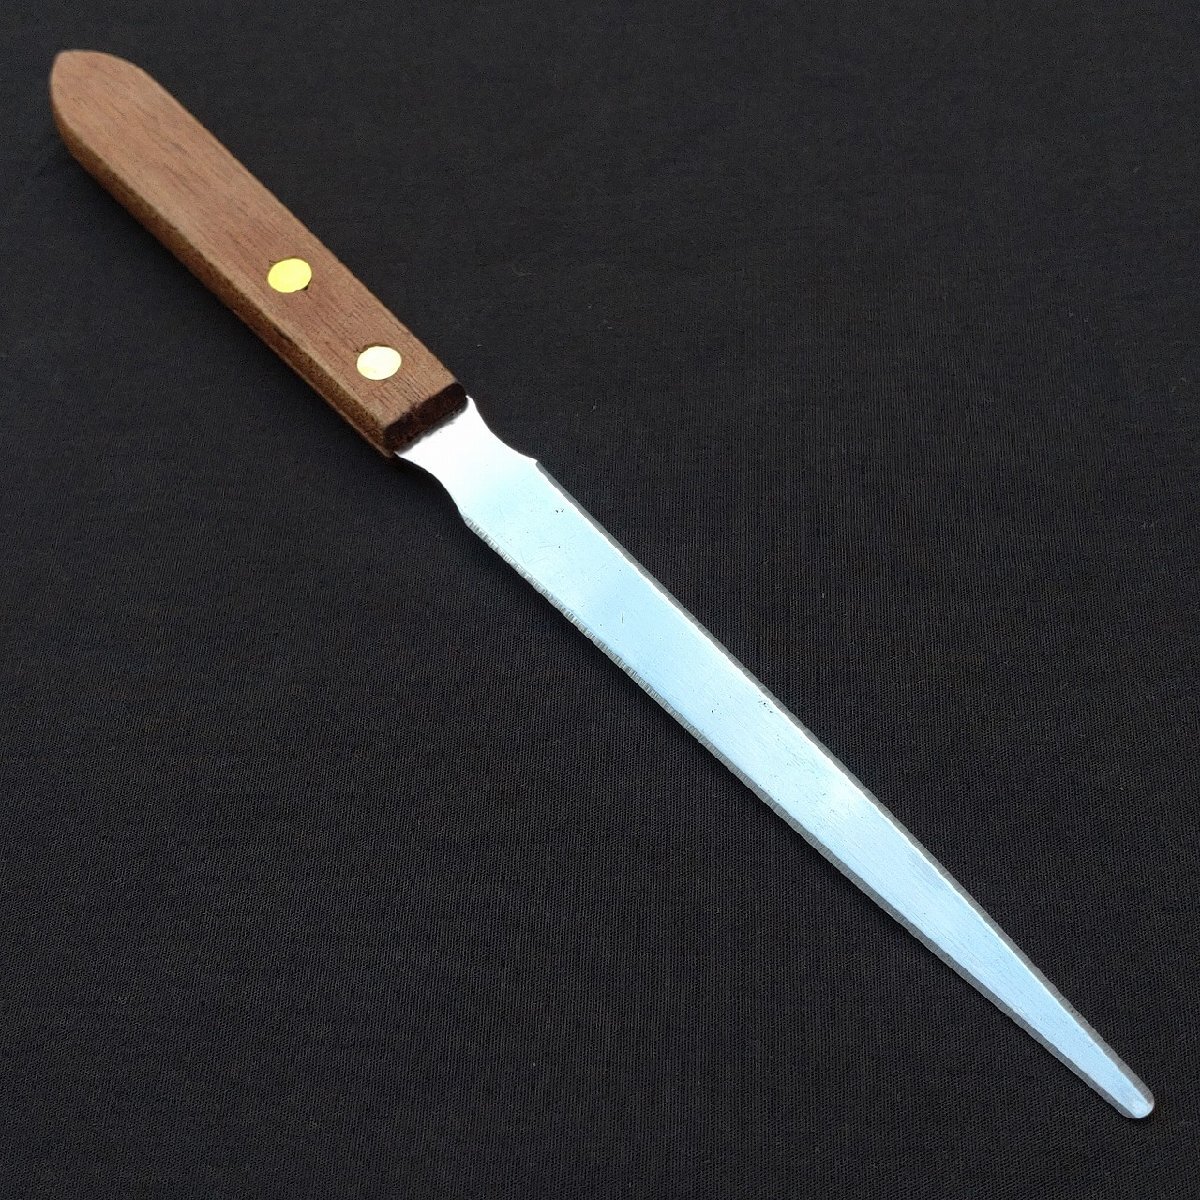  нож для бумаги общая длина примерно 218. лезвие длина примерно 120. письмо устройство открывания бумага нож канцелярские товары [9768]